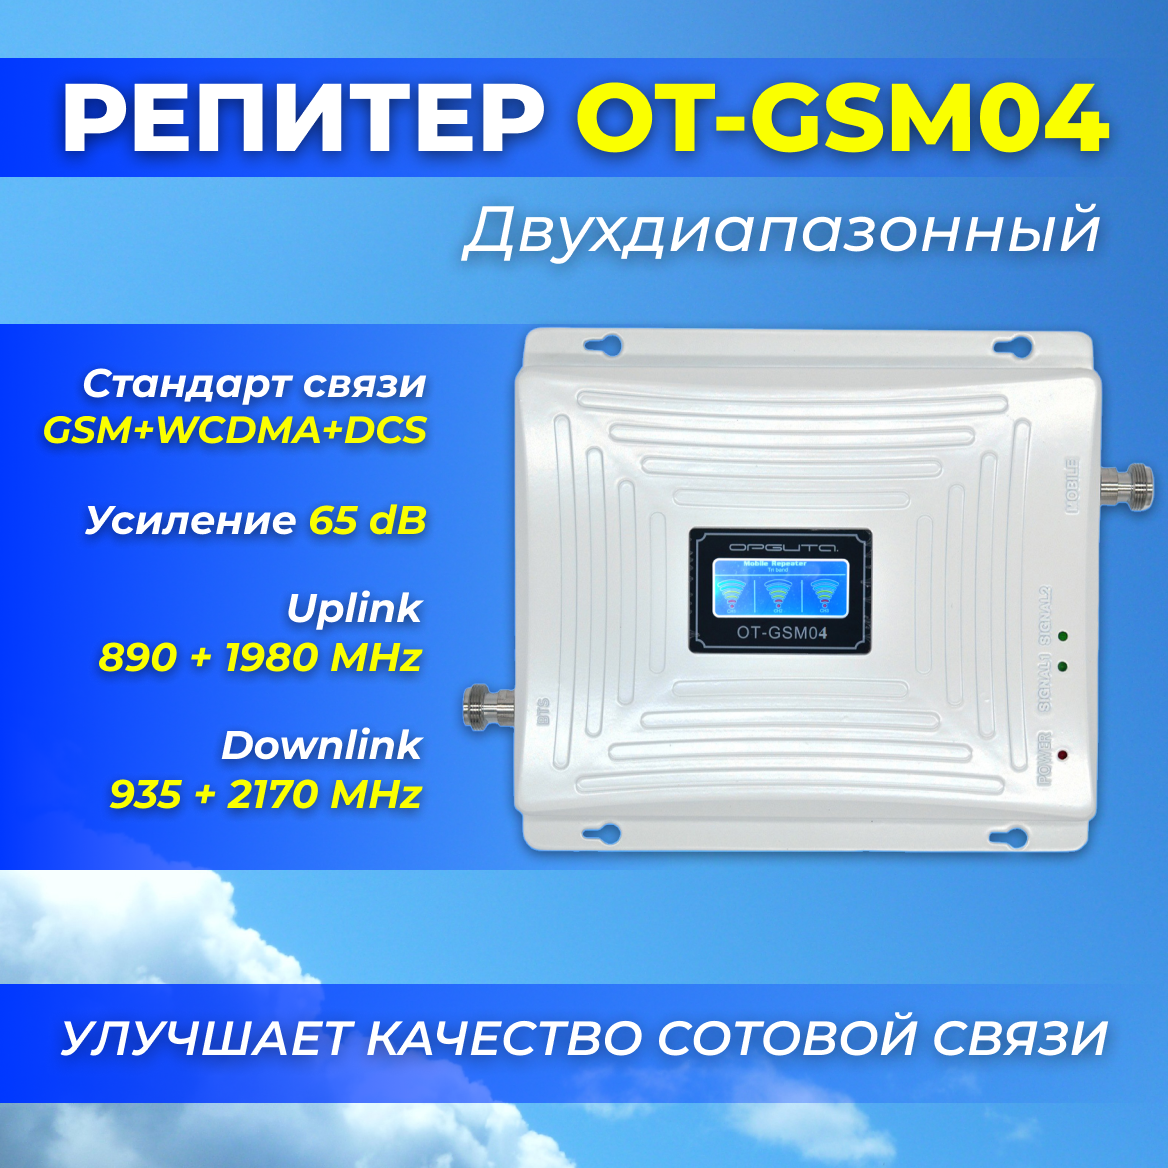 Репитер двухдиапазонный OT-GSM04 (2G-900/3G-2100/4G-1800), 65 dB, улучшает качество сотовой связи